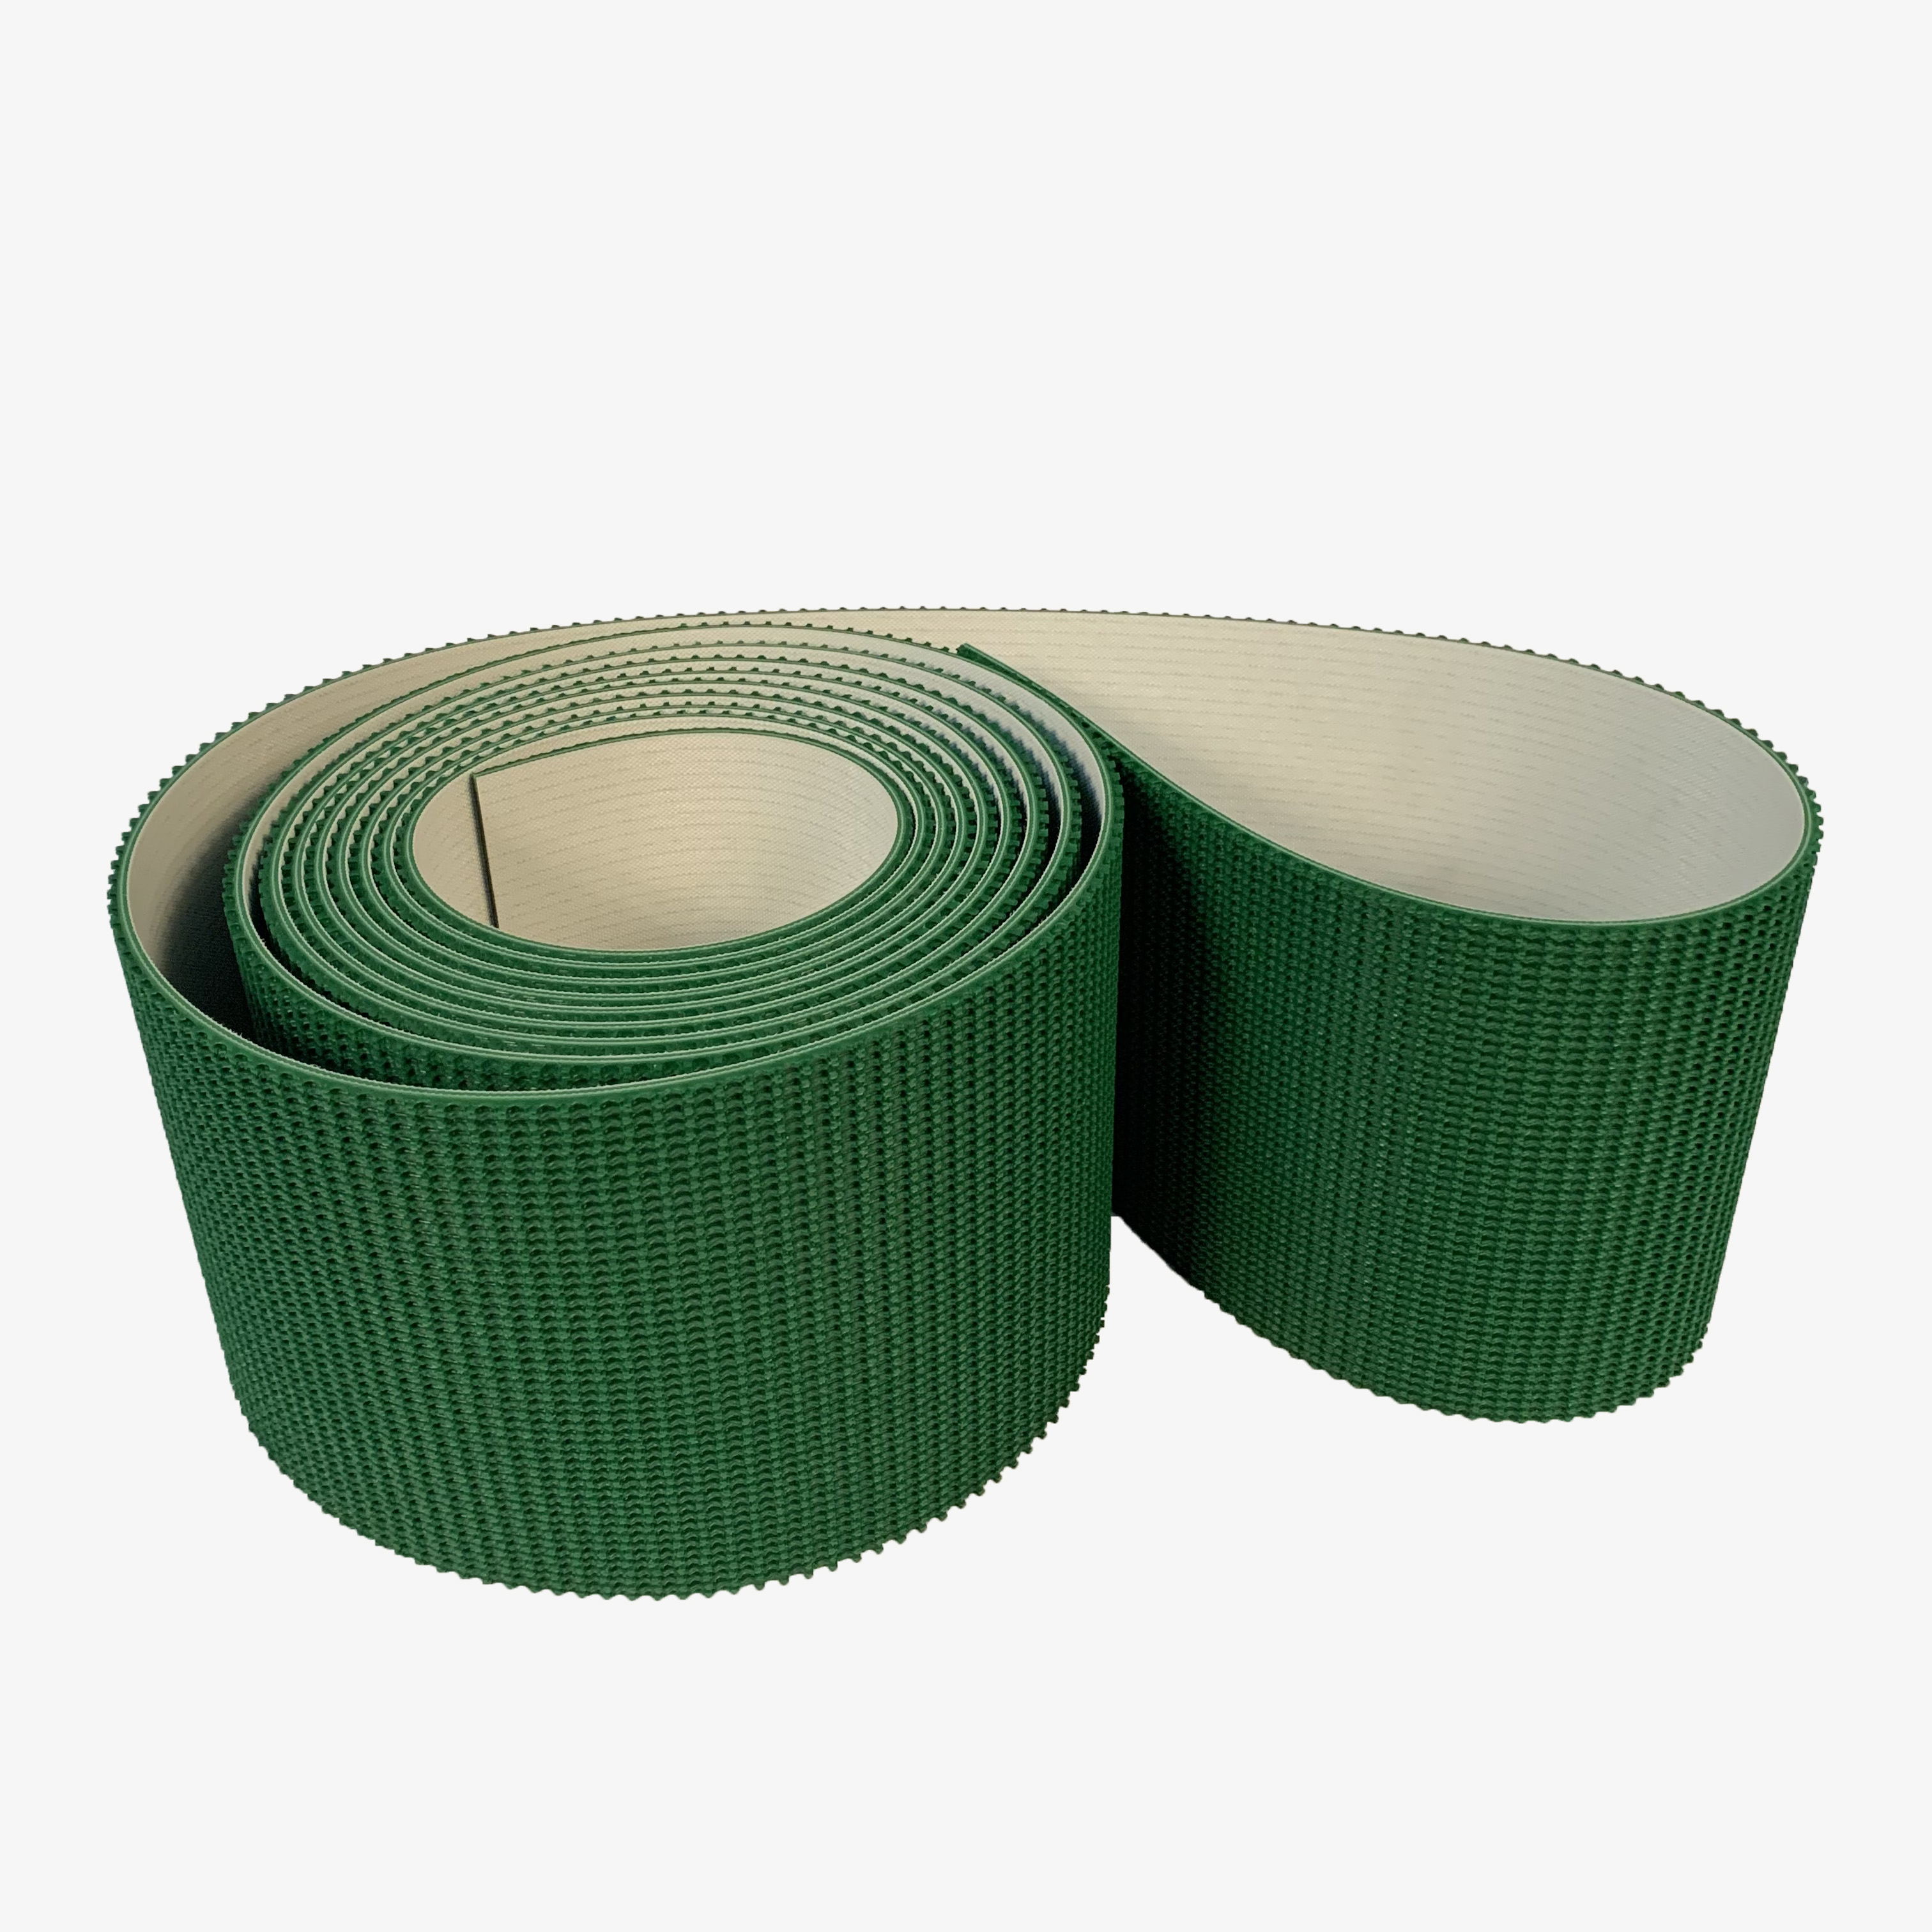 天圳输送带 PVC/SIR/PU轻型输送带 工业皮带 耐磨耐腐蚀耐油食品级输送带